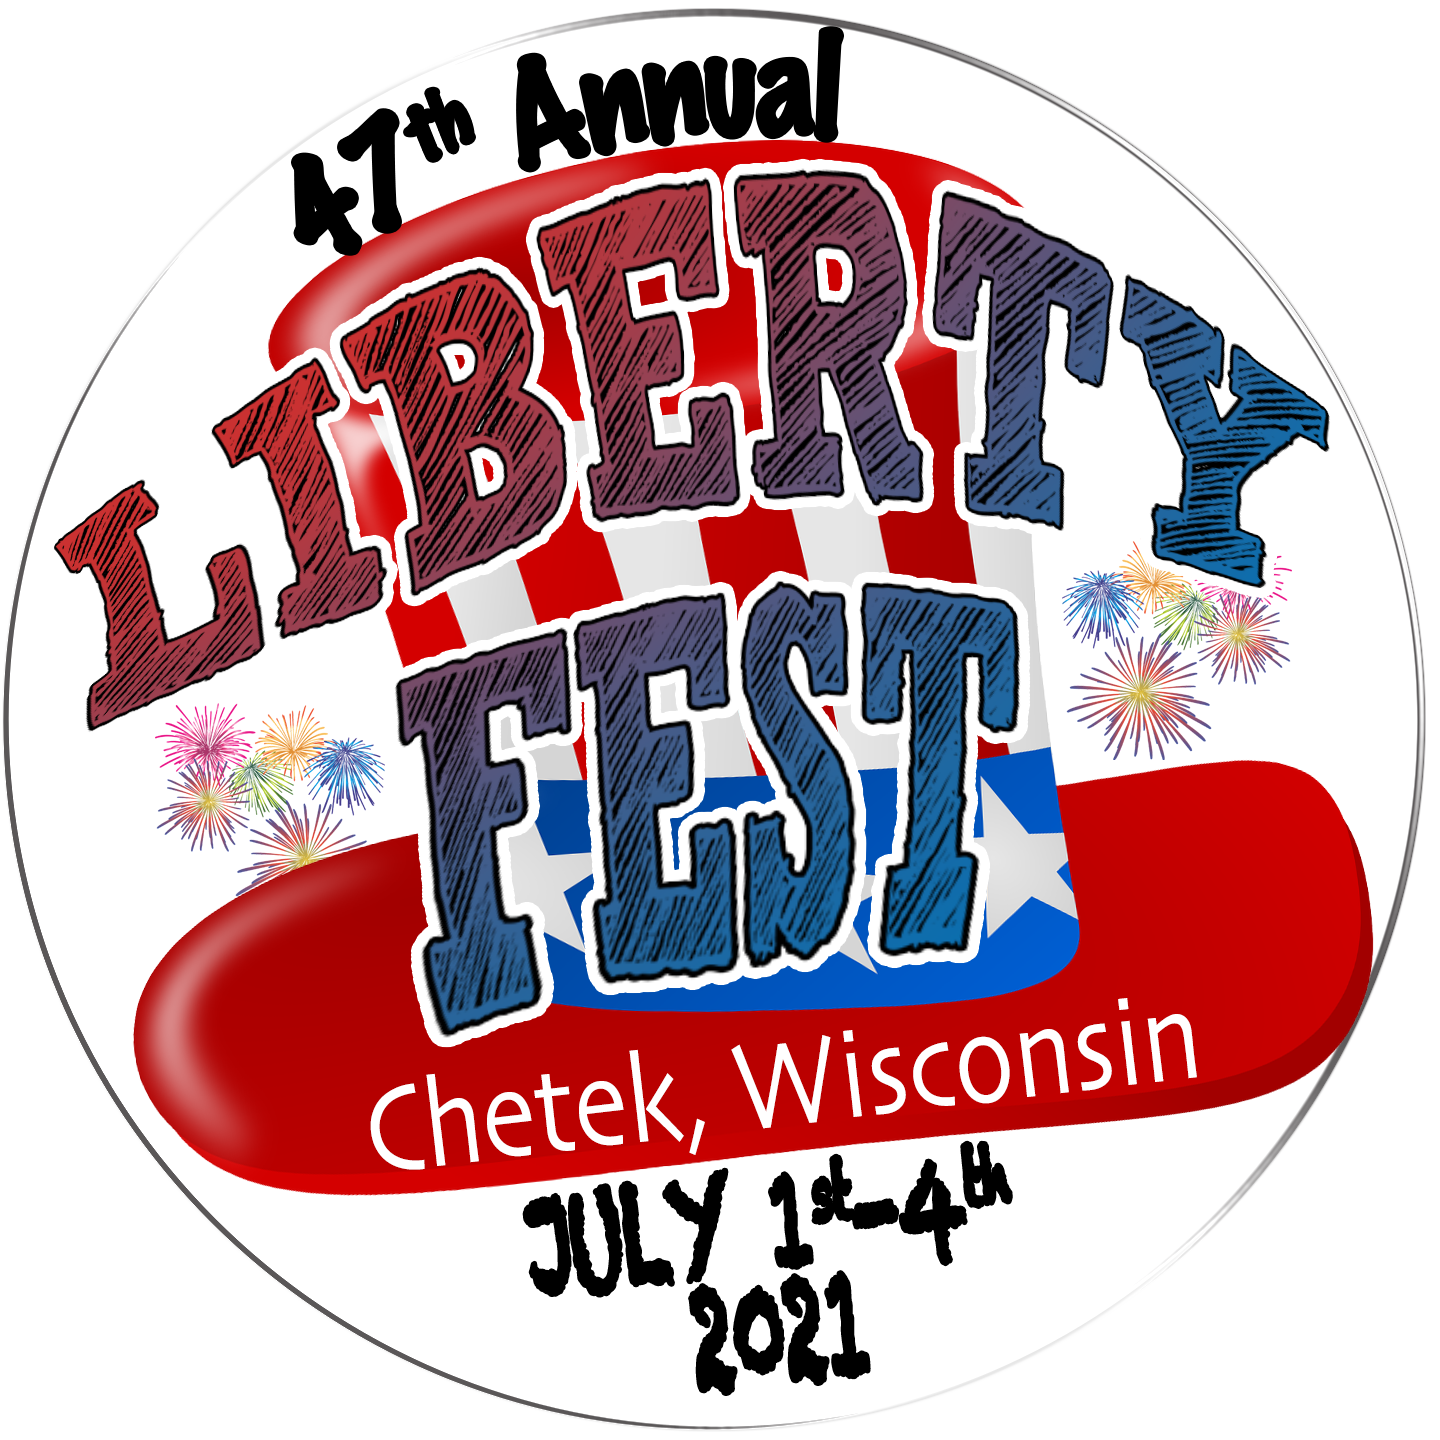 Liberty Fest 4th of July Celebration Chetek WI Fireworks, Parade info